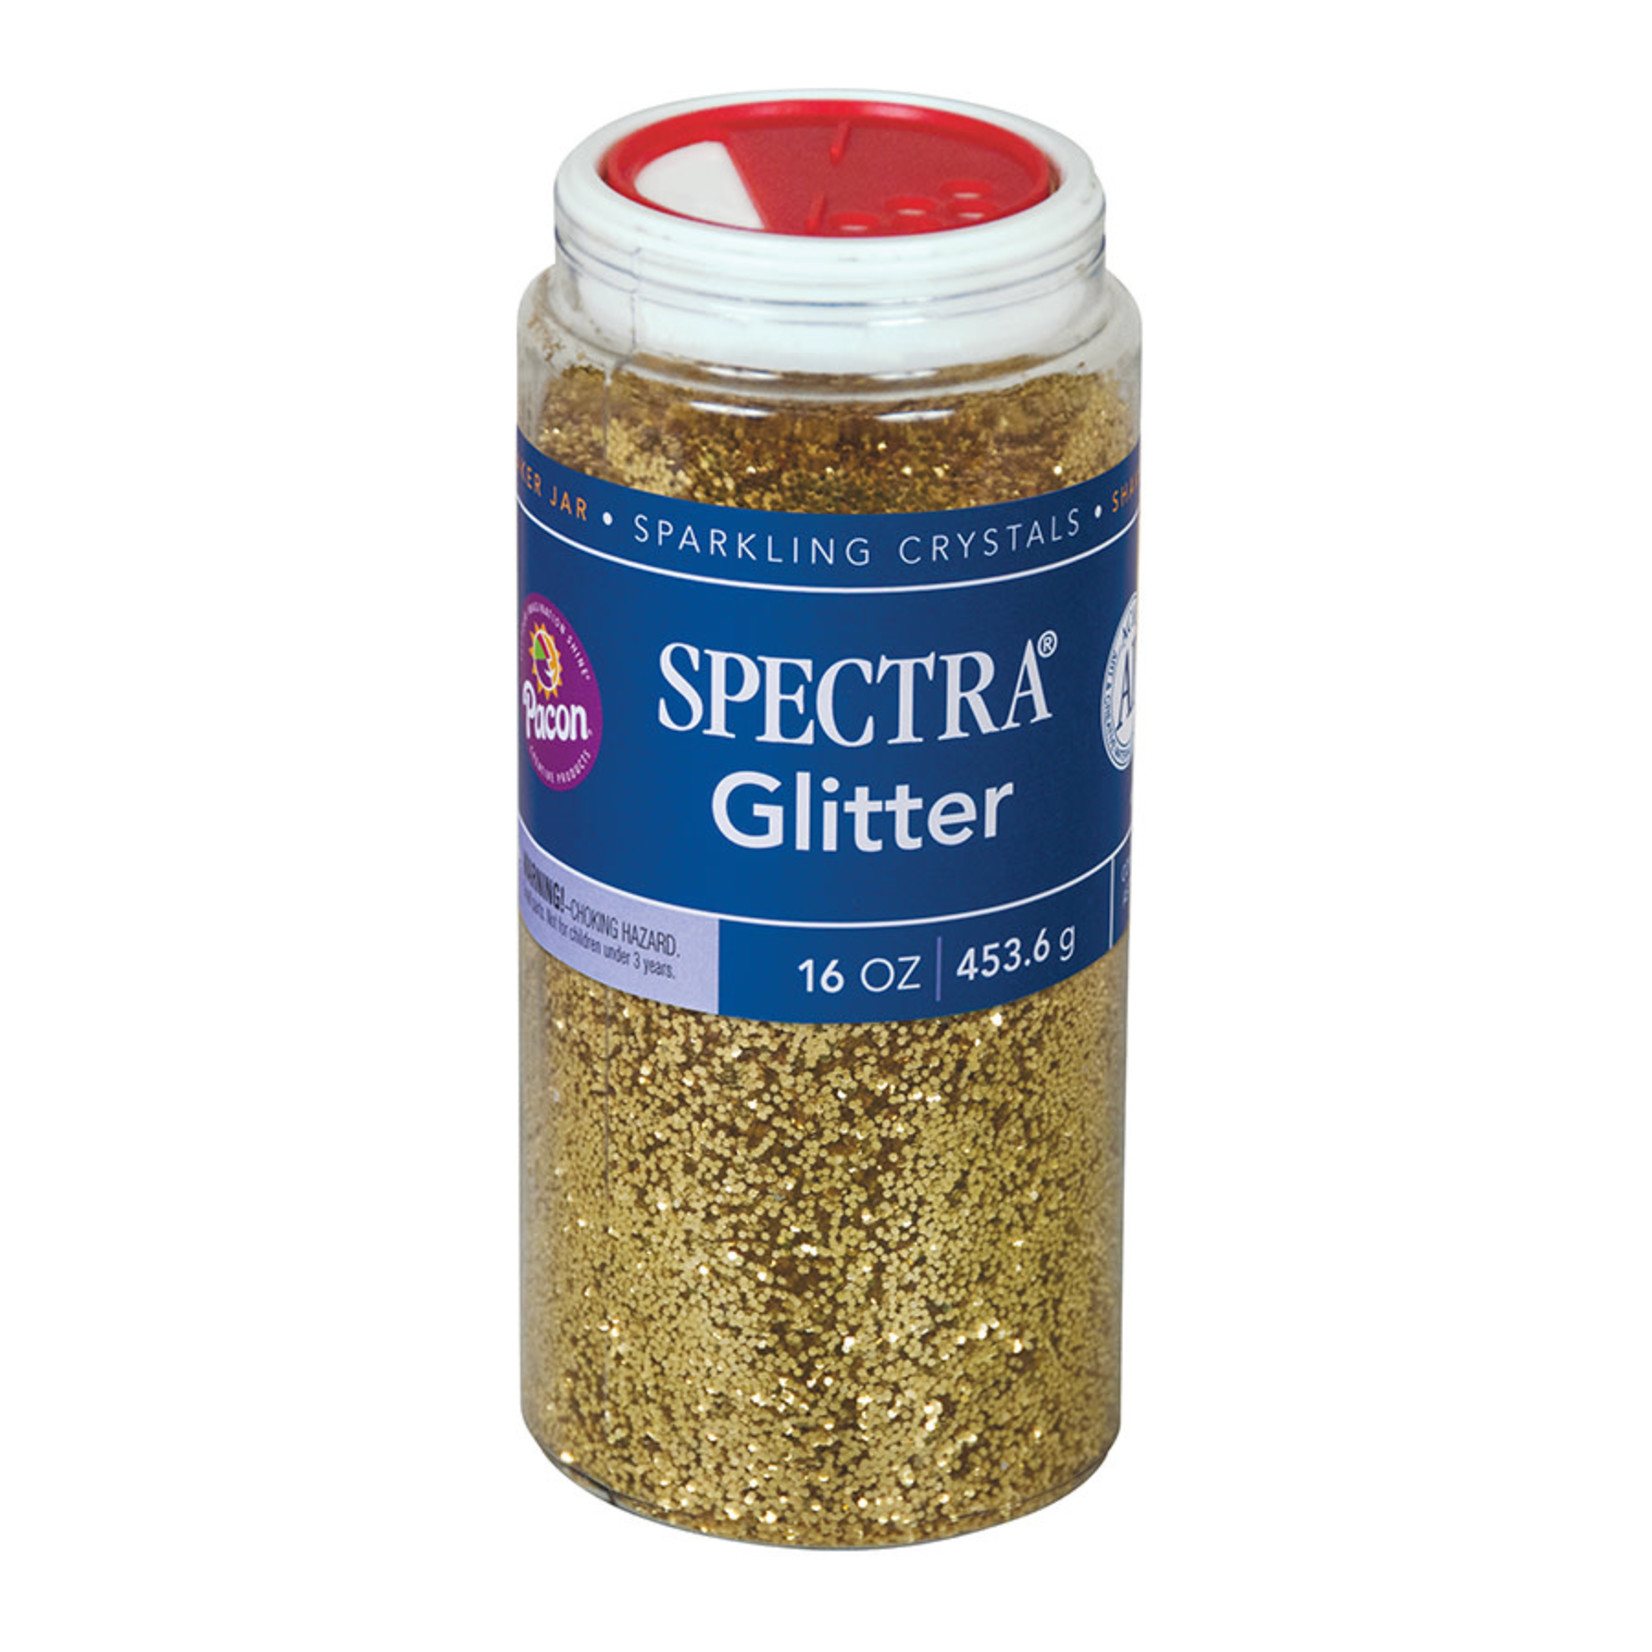 DIXON TICONDEROGA COMPANY Spectra® Glitter Gold